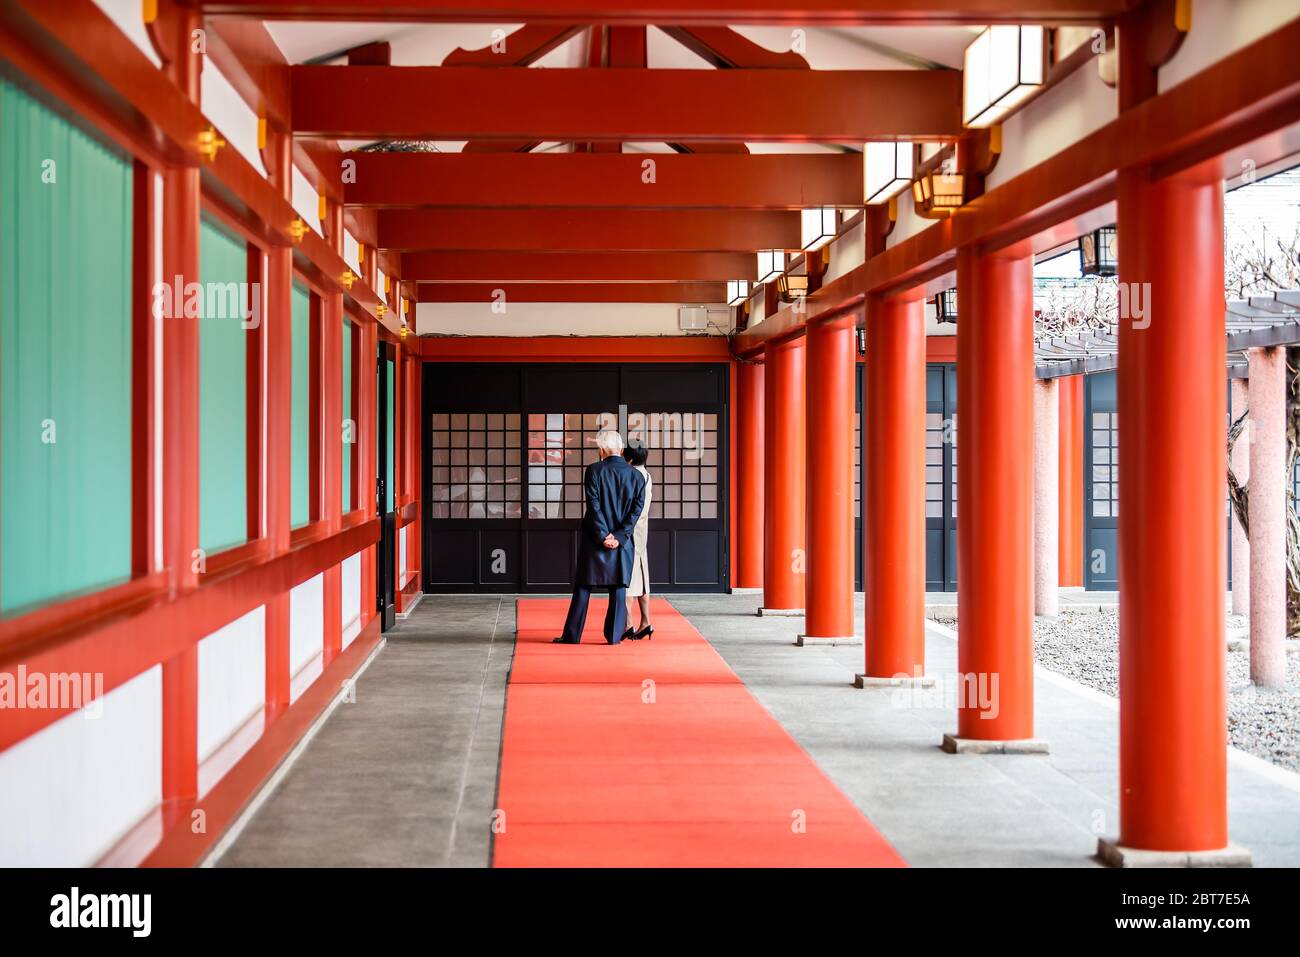 Tokio, Japan - 30. März 2019: Korridor Passage Hall Pfad in Hie Schrein mit Menschen Touristen Blick auf rot bunte Architektur durch Hof Stockfoto